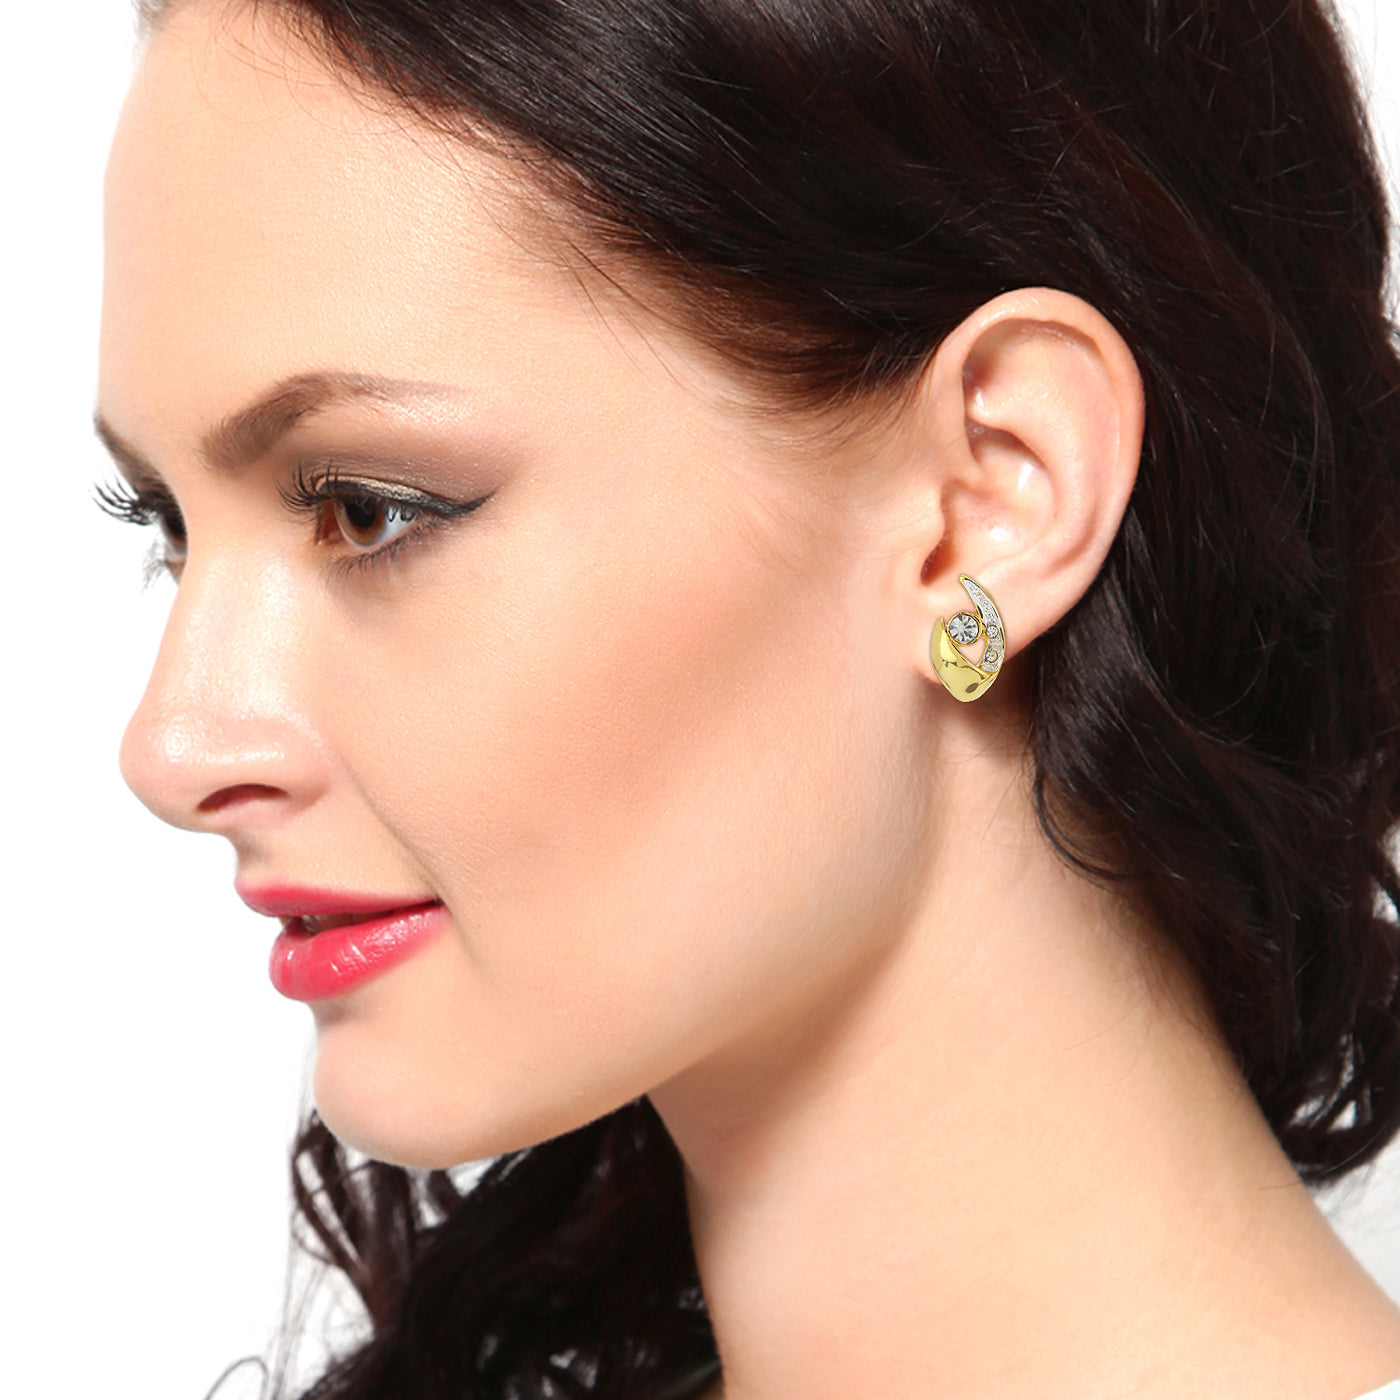 Estele Gold Plated AD Crystal Stud Earrings